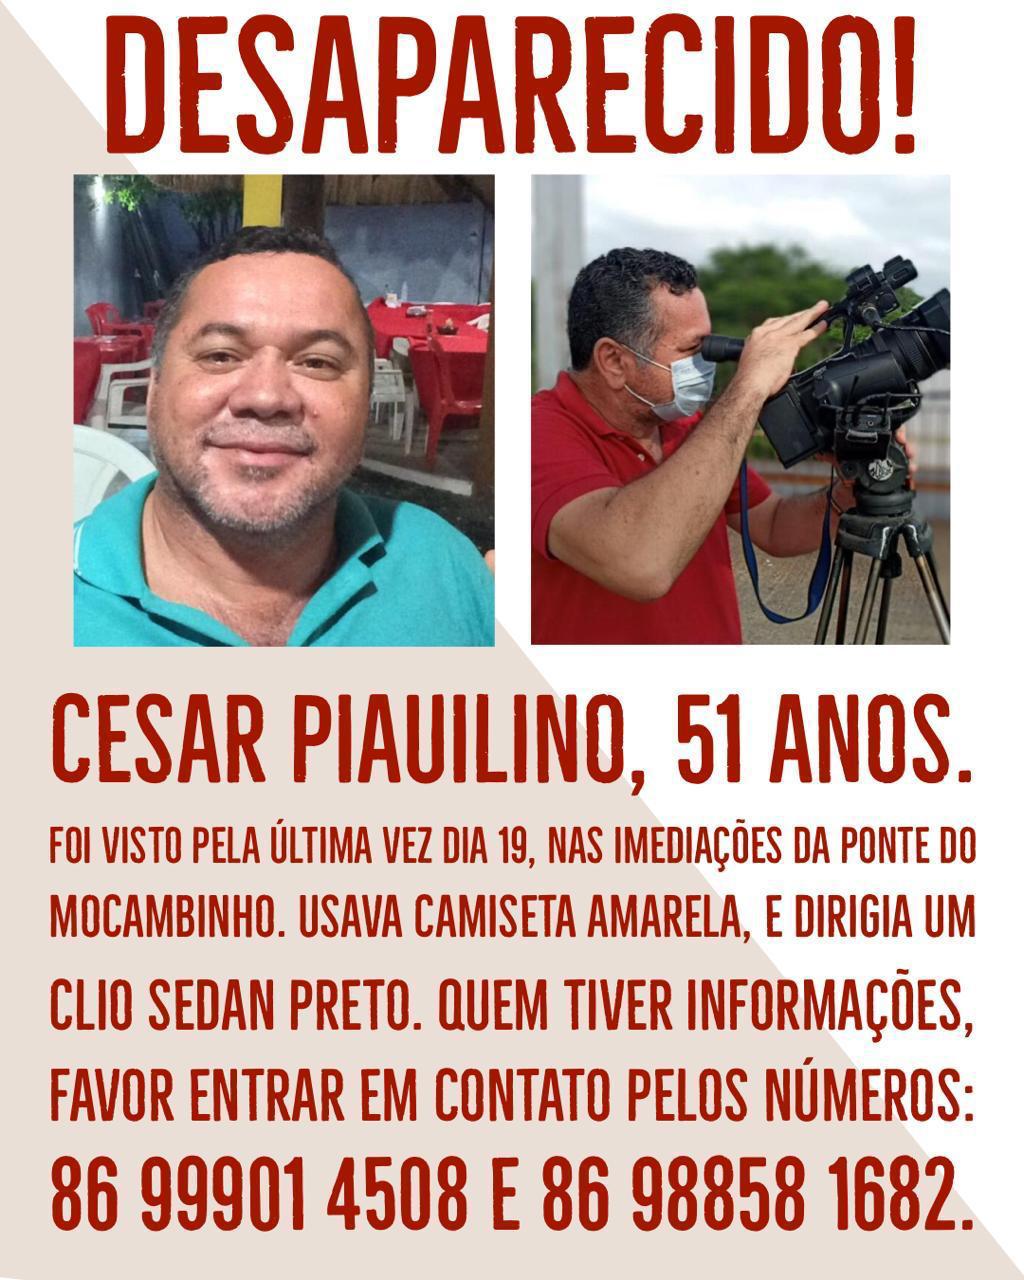 César Piauilino está desaparecido desde ontem